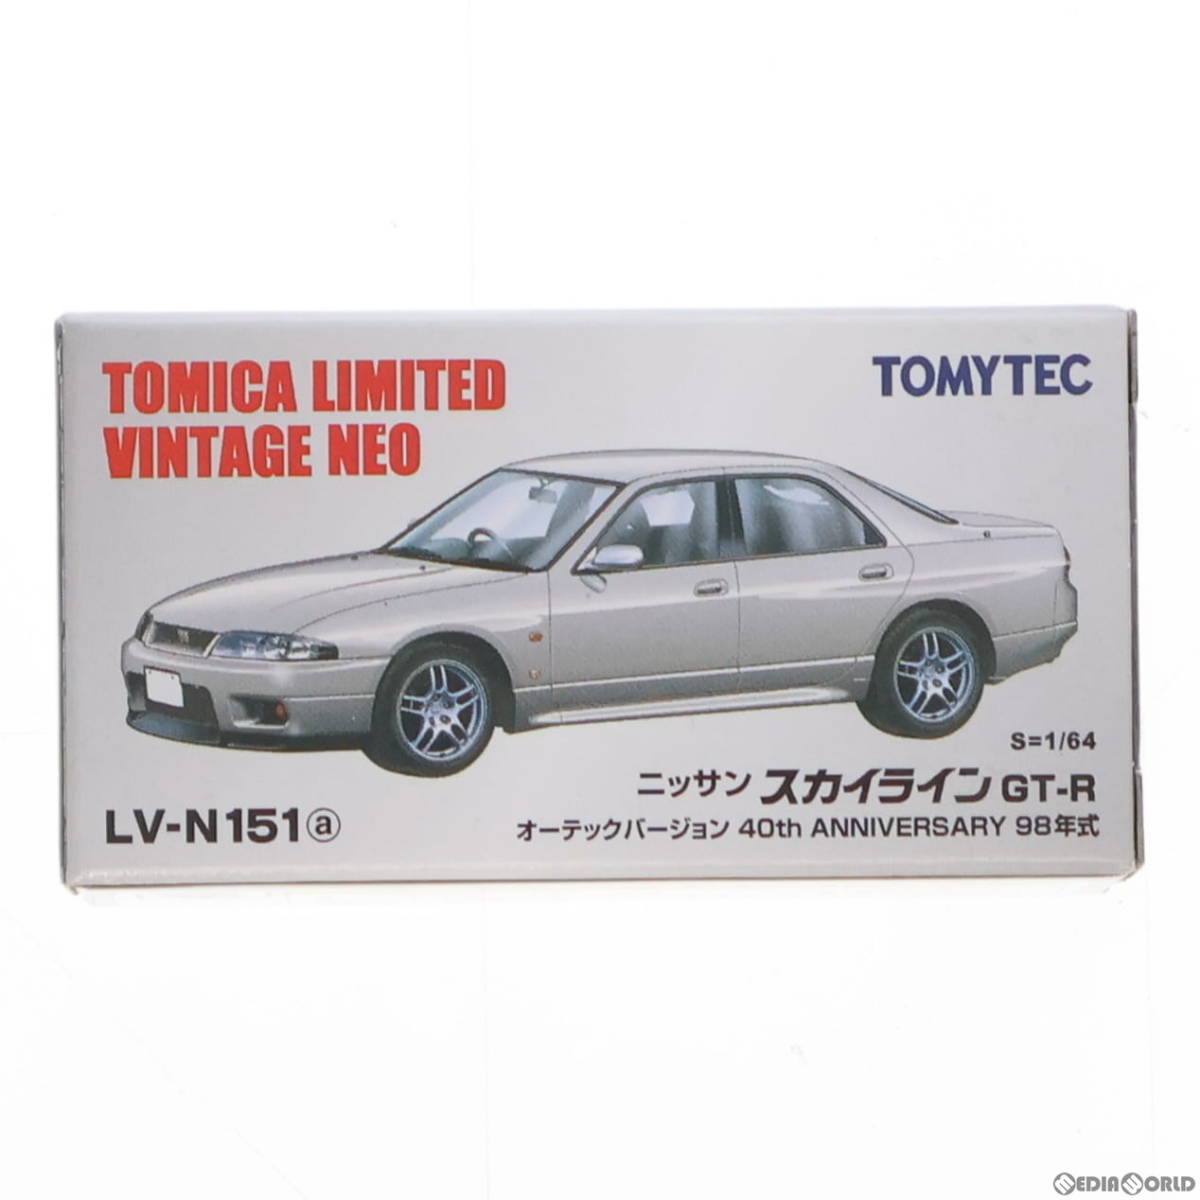 【中古】[MDL]トミカリミテッドヴィンテージ NEO 1/64LV-N151a スカイライン GT-R オーテックバージョン(銀) 完成品 ミニカー TOMYTEC(トミ